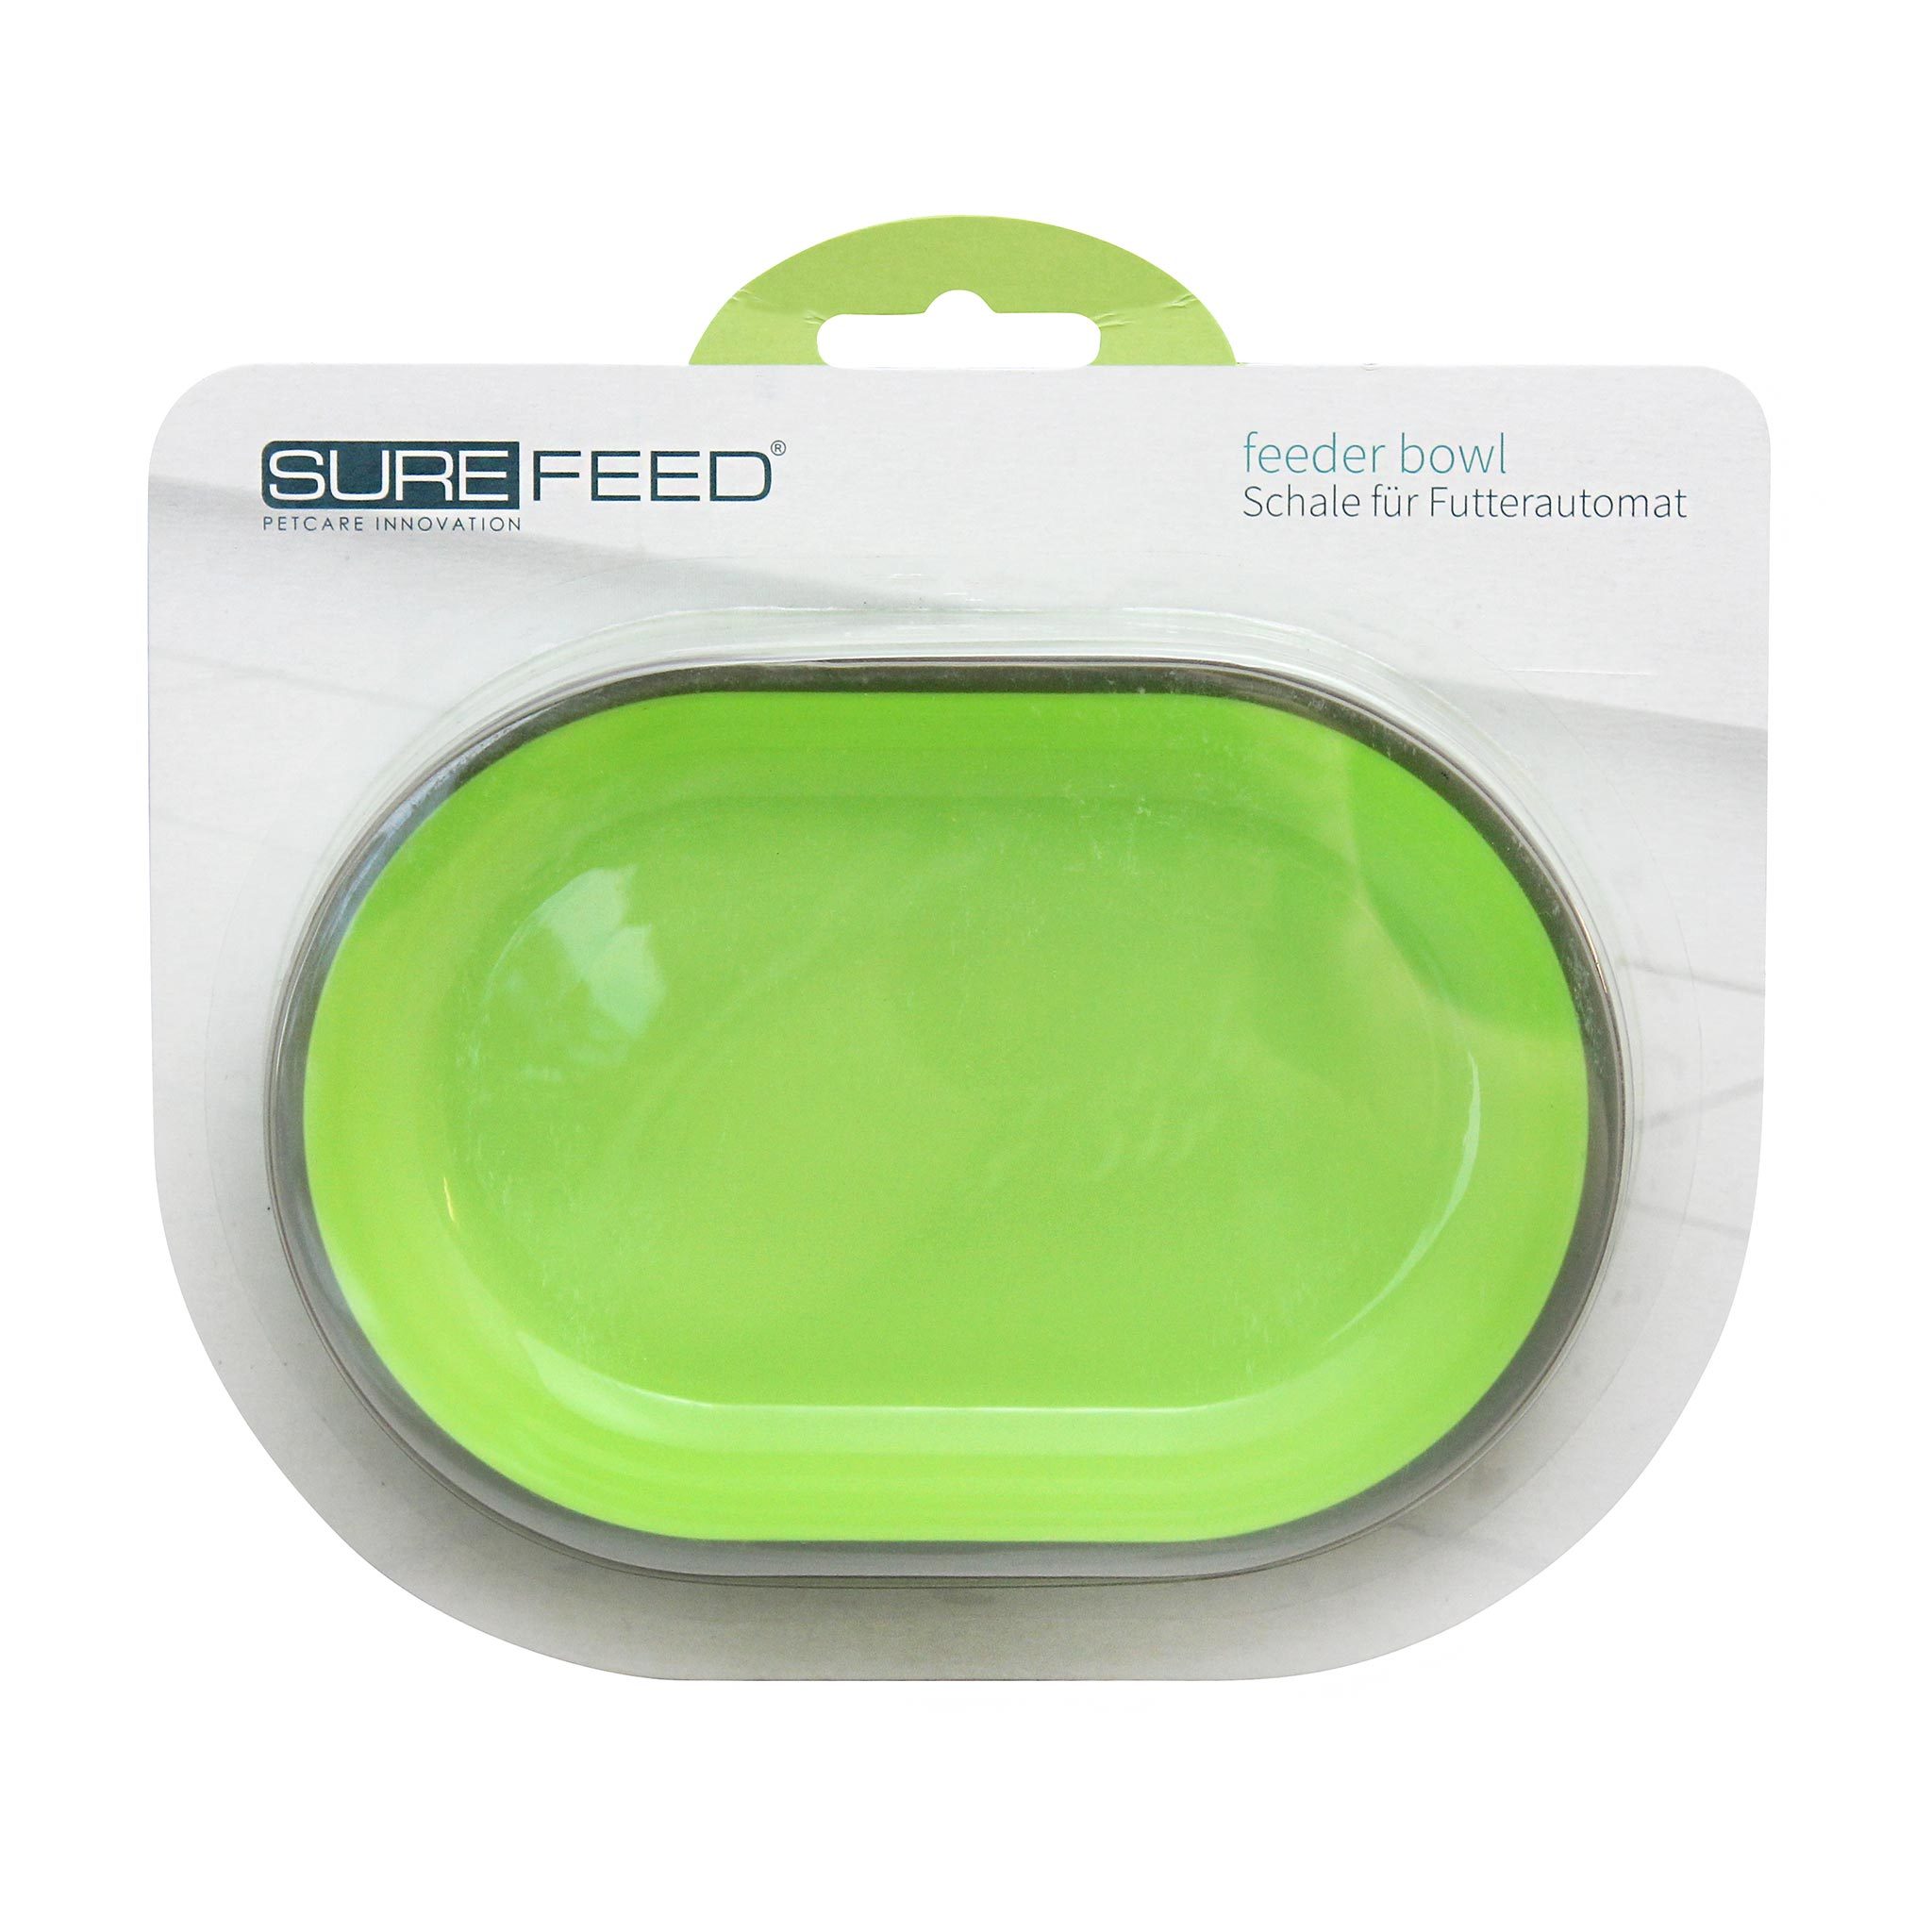 SureFeed Feeder Bowl ชามให้อาหาร สำหรับที่ให้อาหารอัตโนมัติรุ่น Sensor และ Microchip สุนัขและแมว ความจุ 400 มล. (สีเขียว)